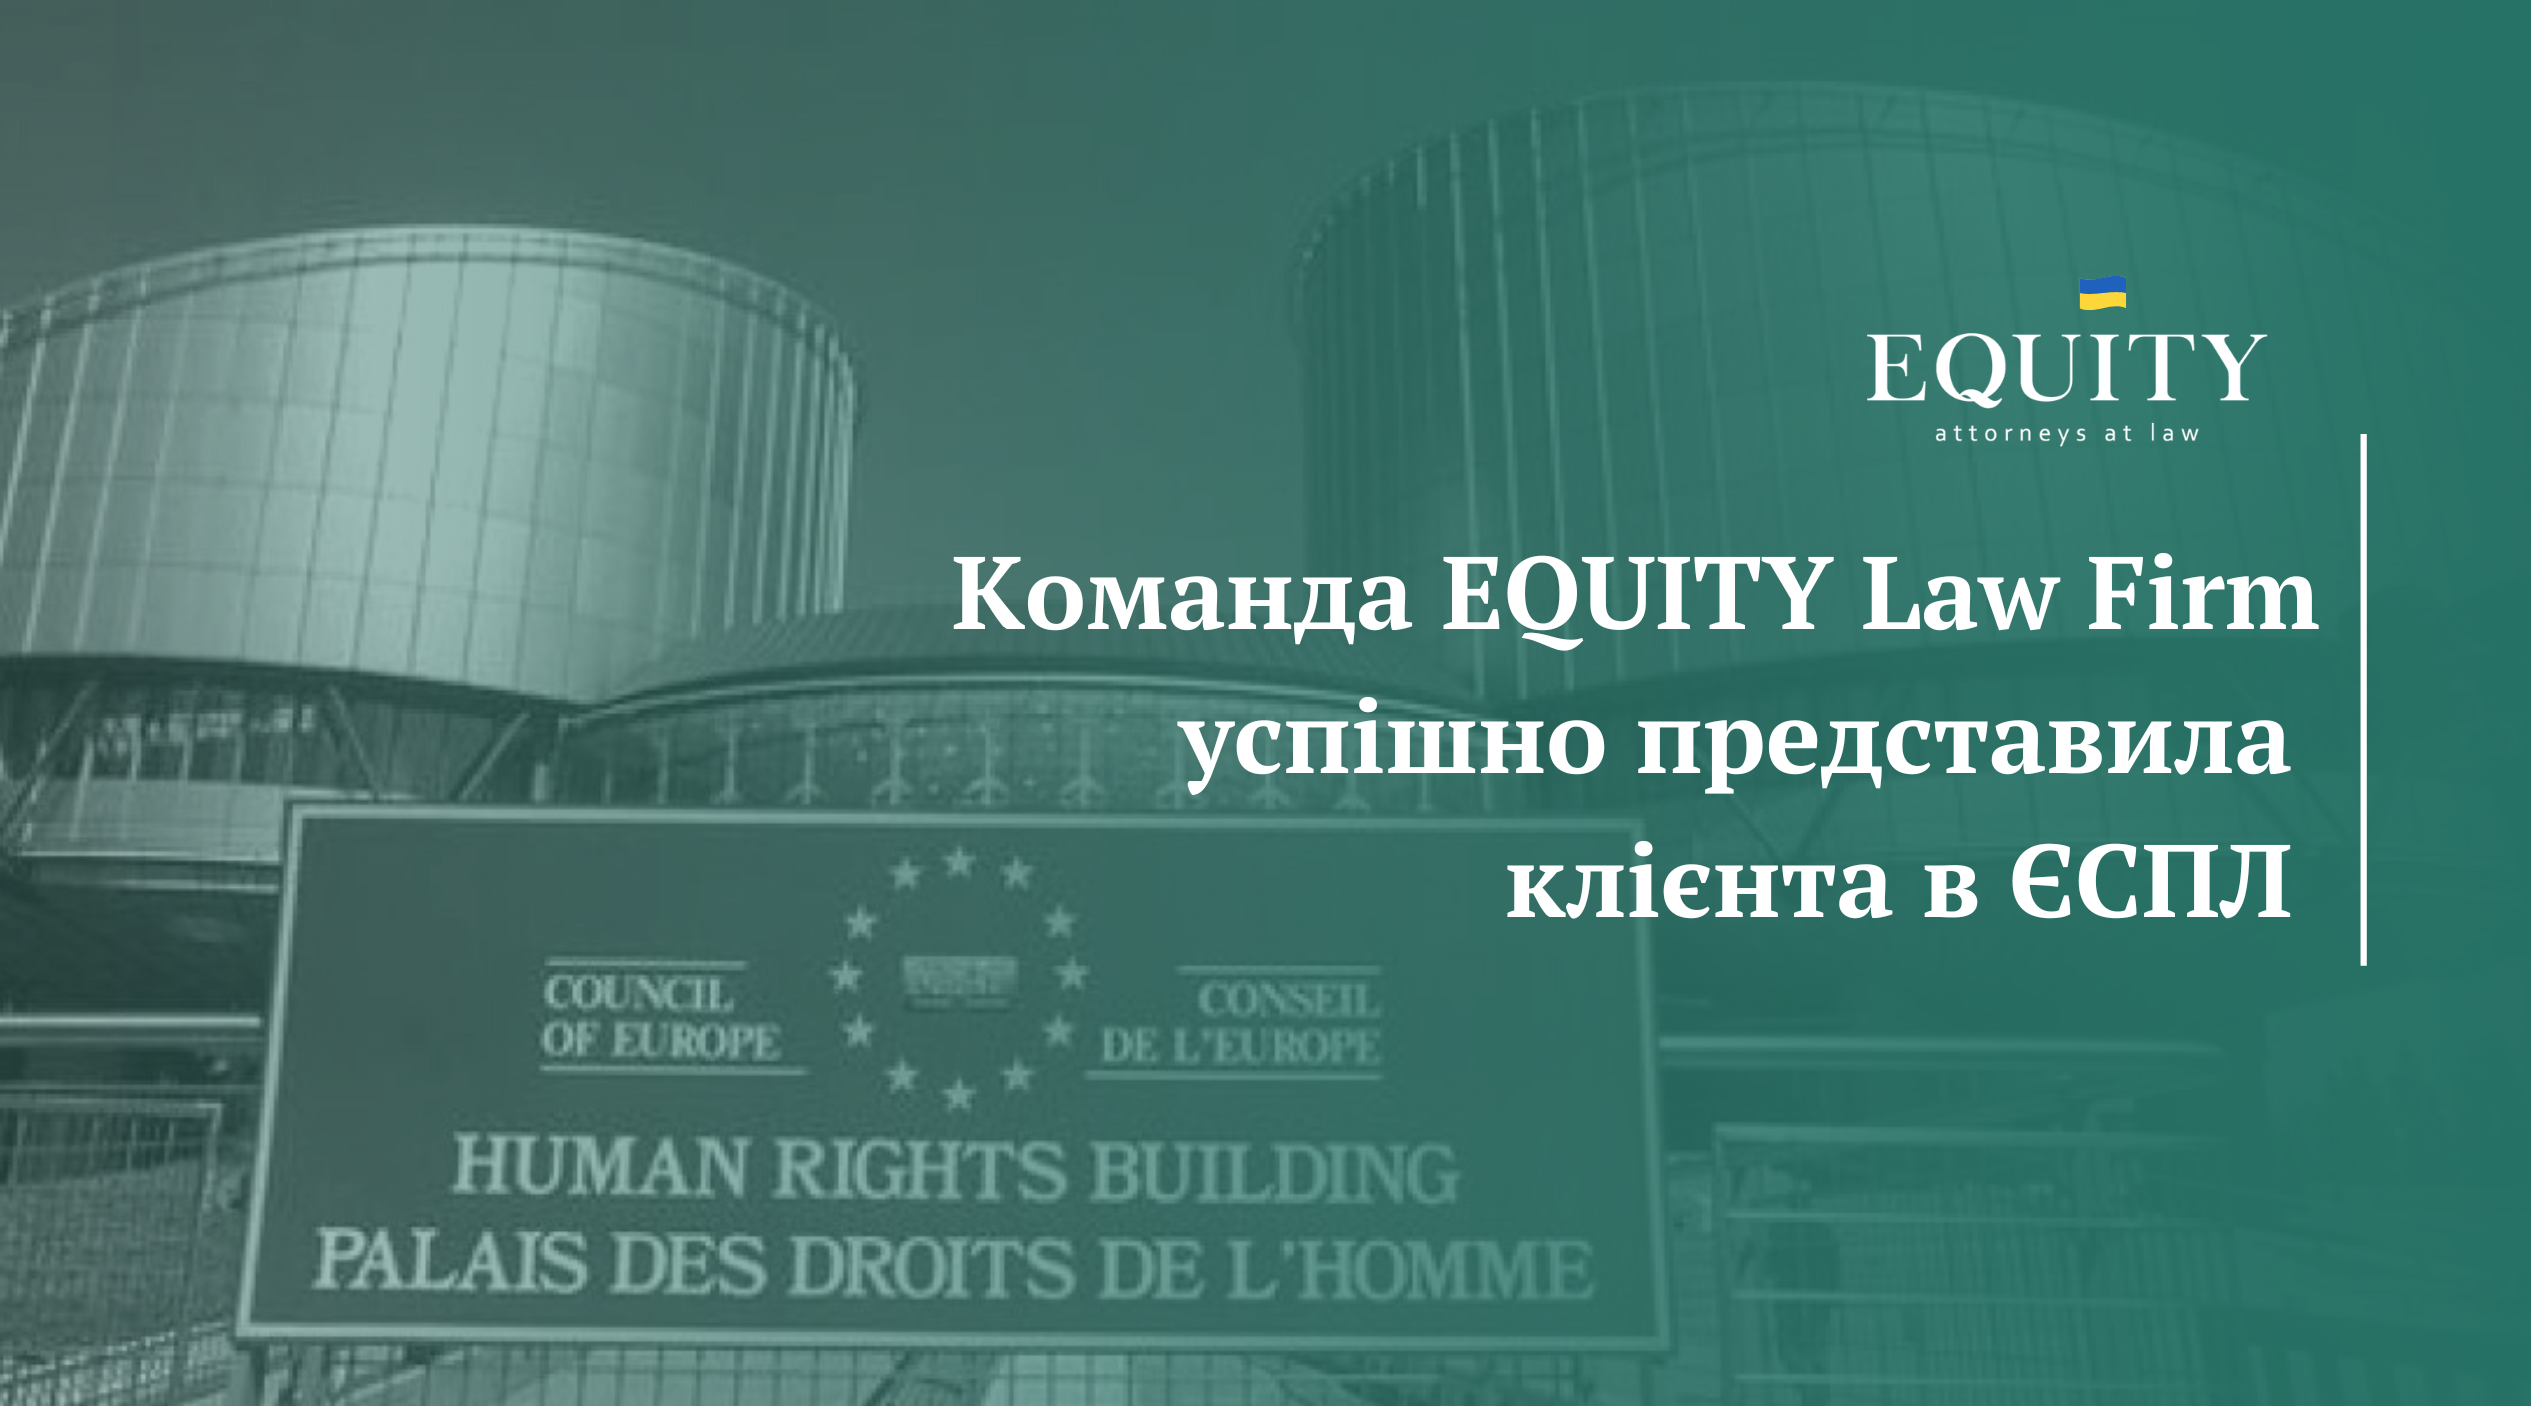 Чергова перемога команди EQUITY в Європейському суді з прав людини!